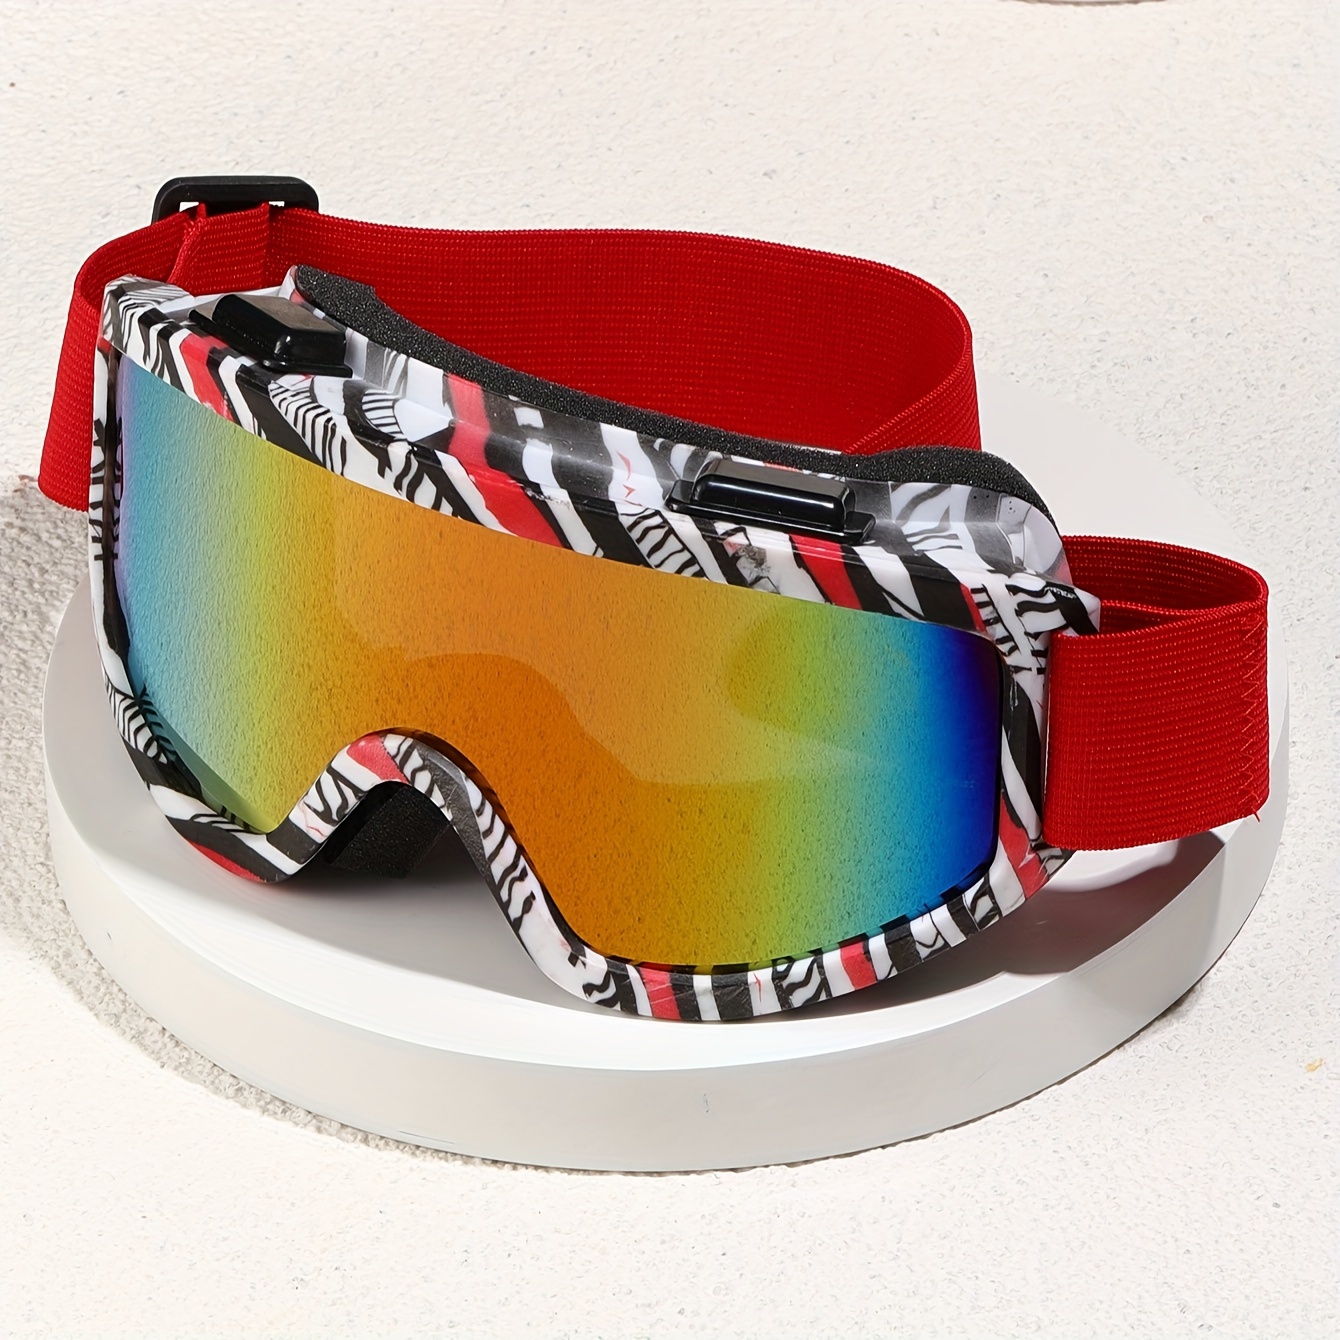  JULI Eyewear MAXJULI - Gafas de esquí y snowboard para hombres,  mujeres, niños, motos de nieve, esquí, patinaje : Deportes y Actividades al  Aire Libre